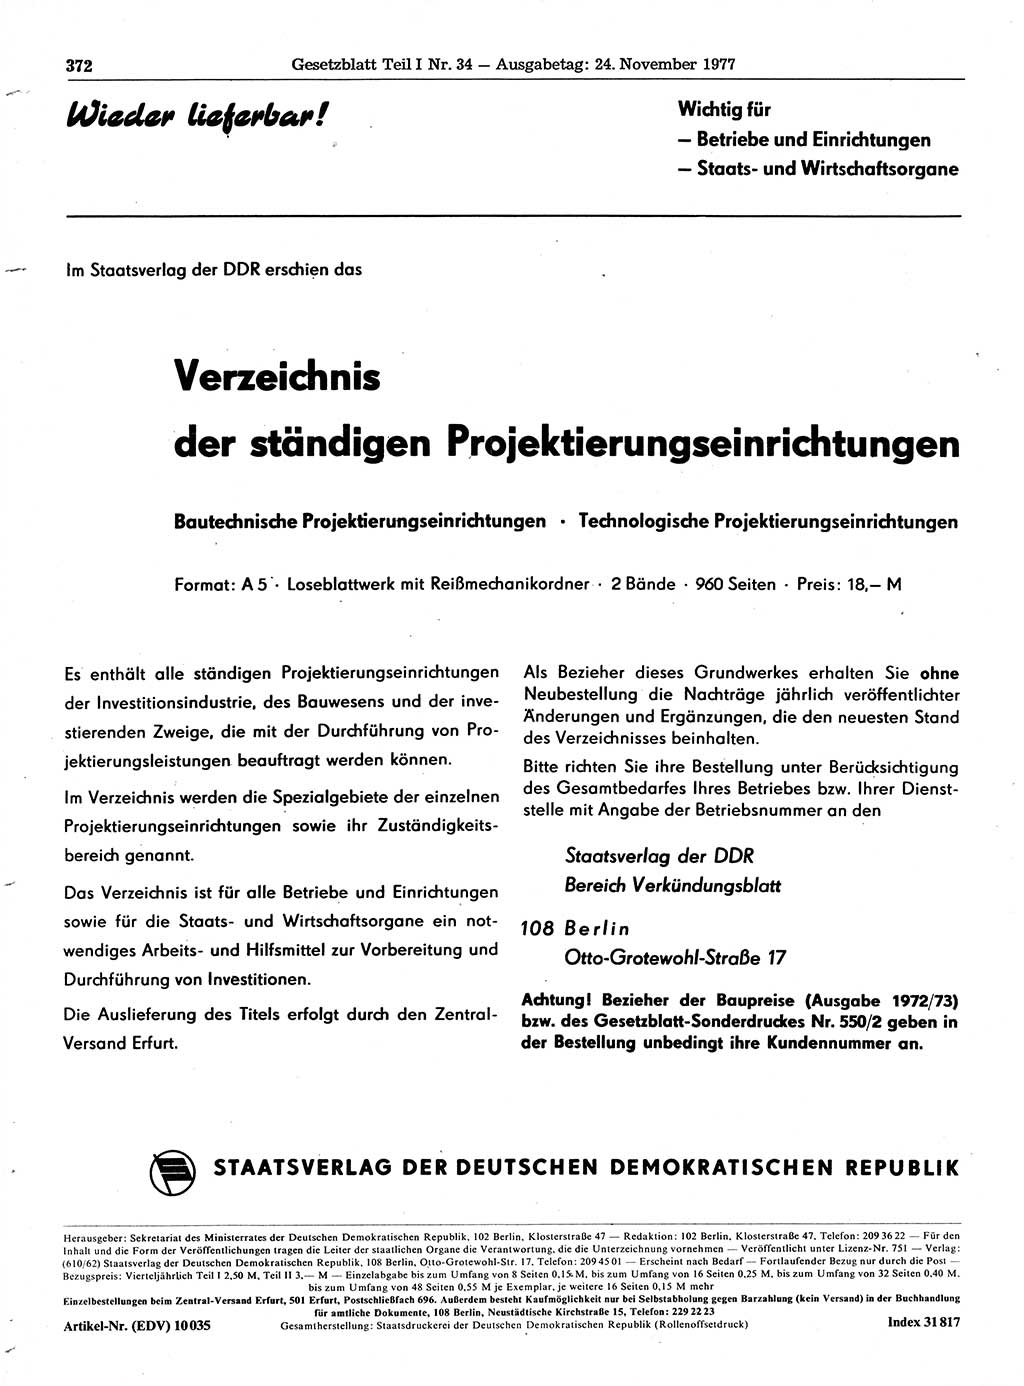 Gesetzblatt (GBl.) der Deutschen Demokratischen Republik (DDR) Teil Ⅰ 1977, Seite 372 (GBl. DDR Ⅰ 1977, S. 372)